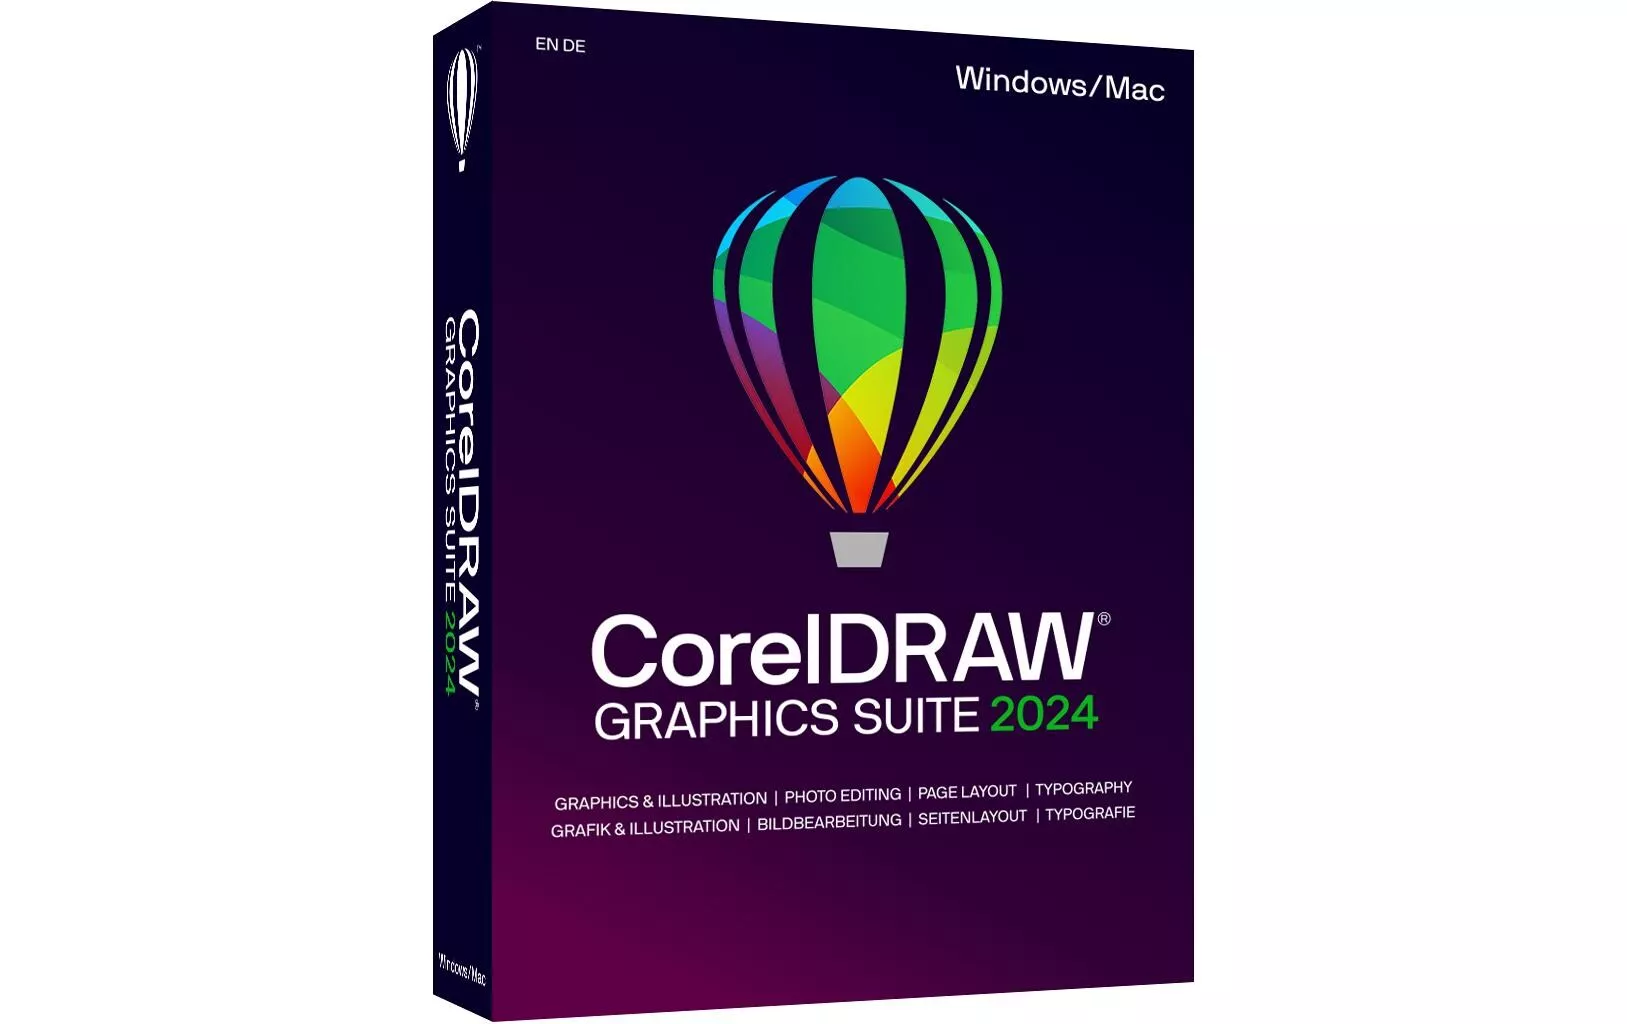 CorelDraw Graphics Suite 2024 Box, completo, Win/Mac, IT/DE